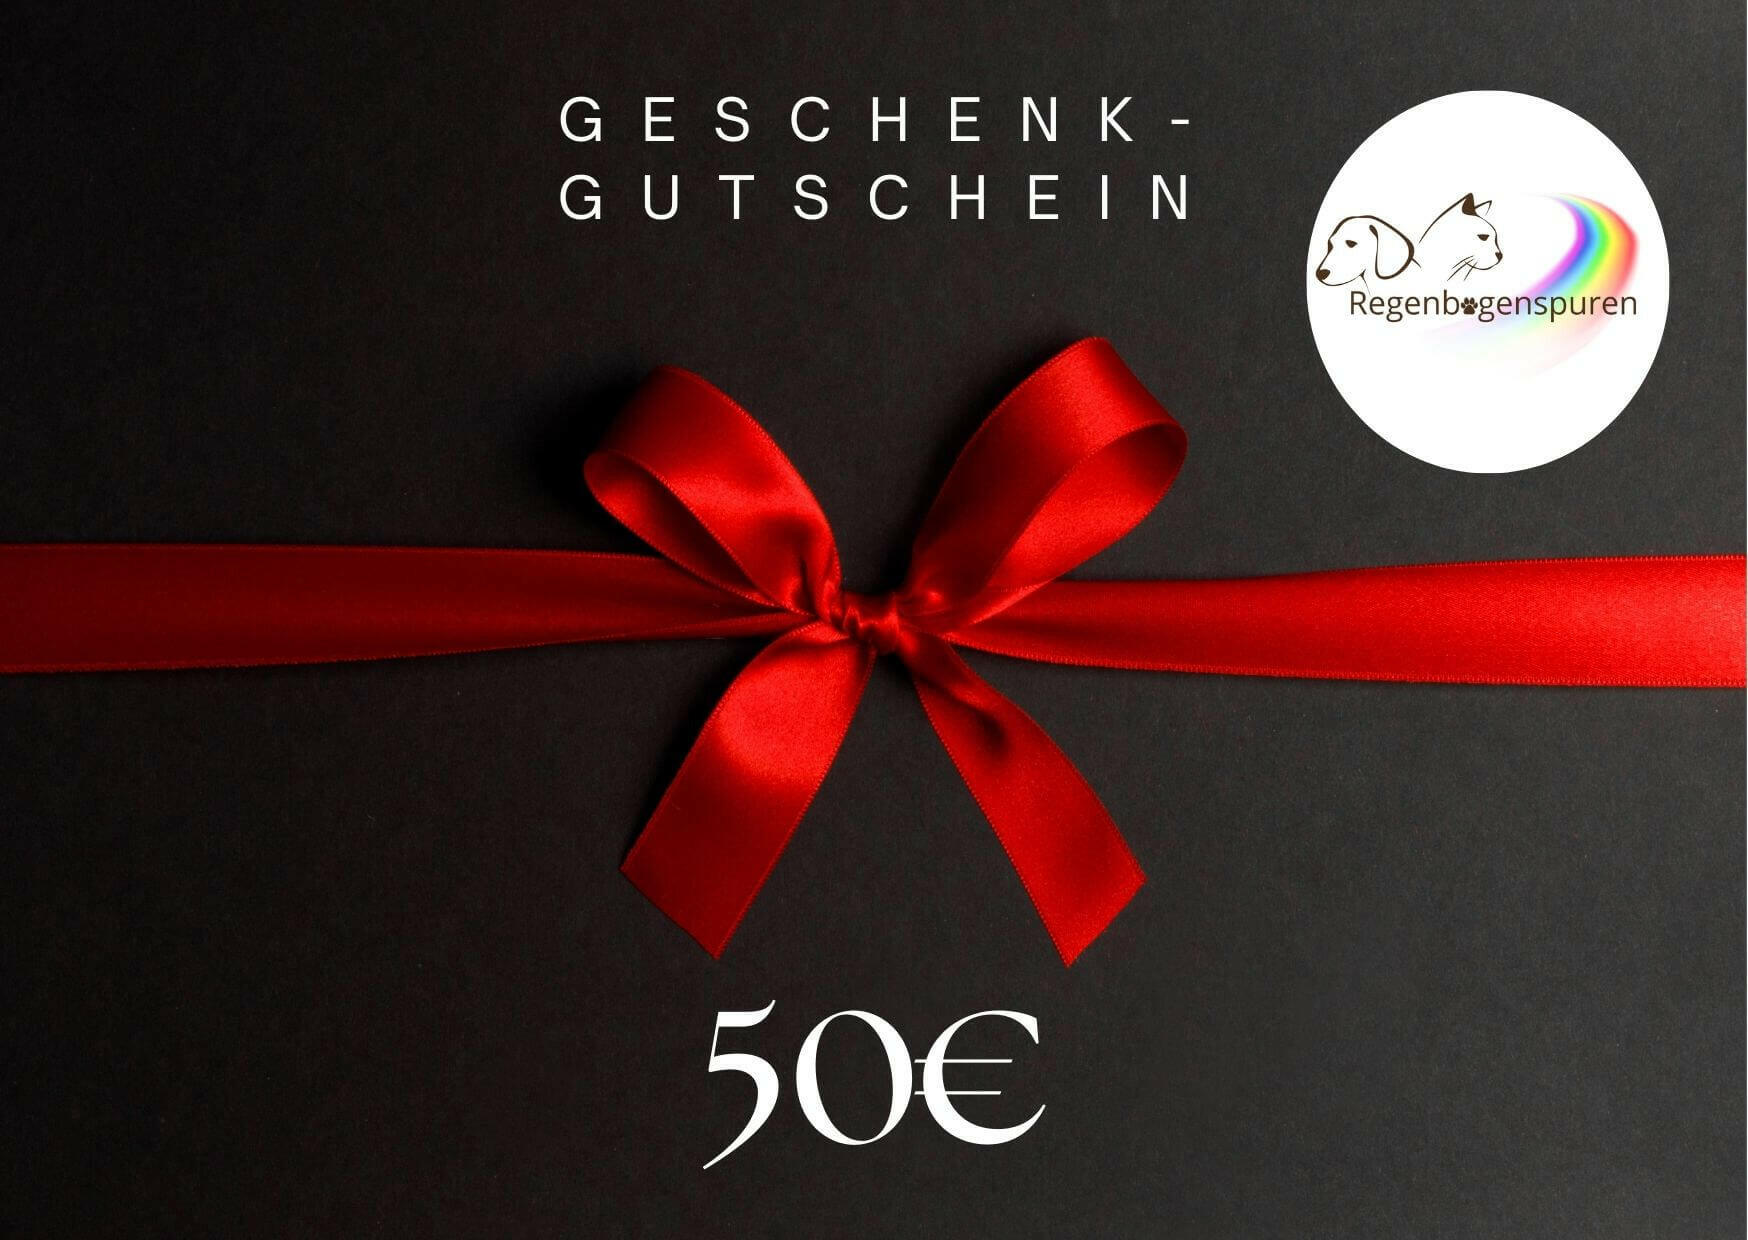 Schwarzer Geschenkgutschein für 50 Euro mit roter Schleife und Logo von Regenbogenspuren.